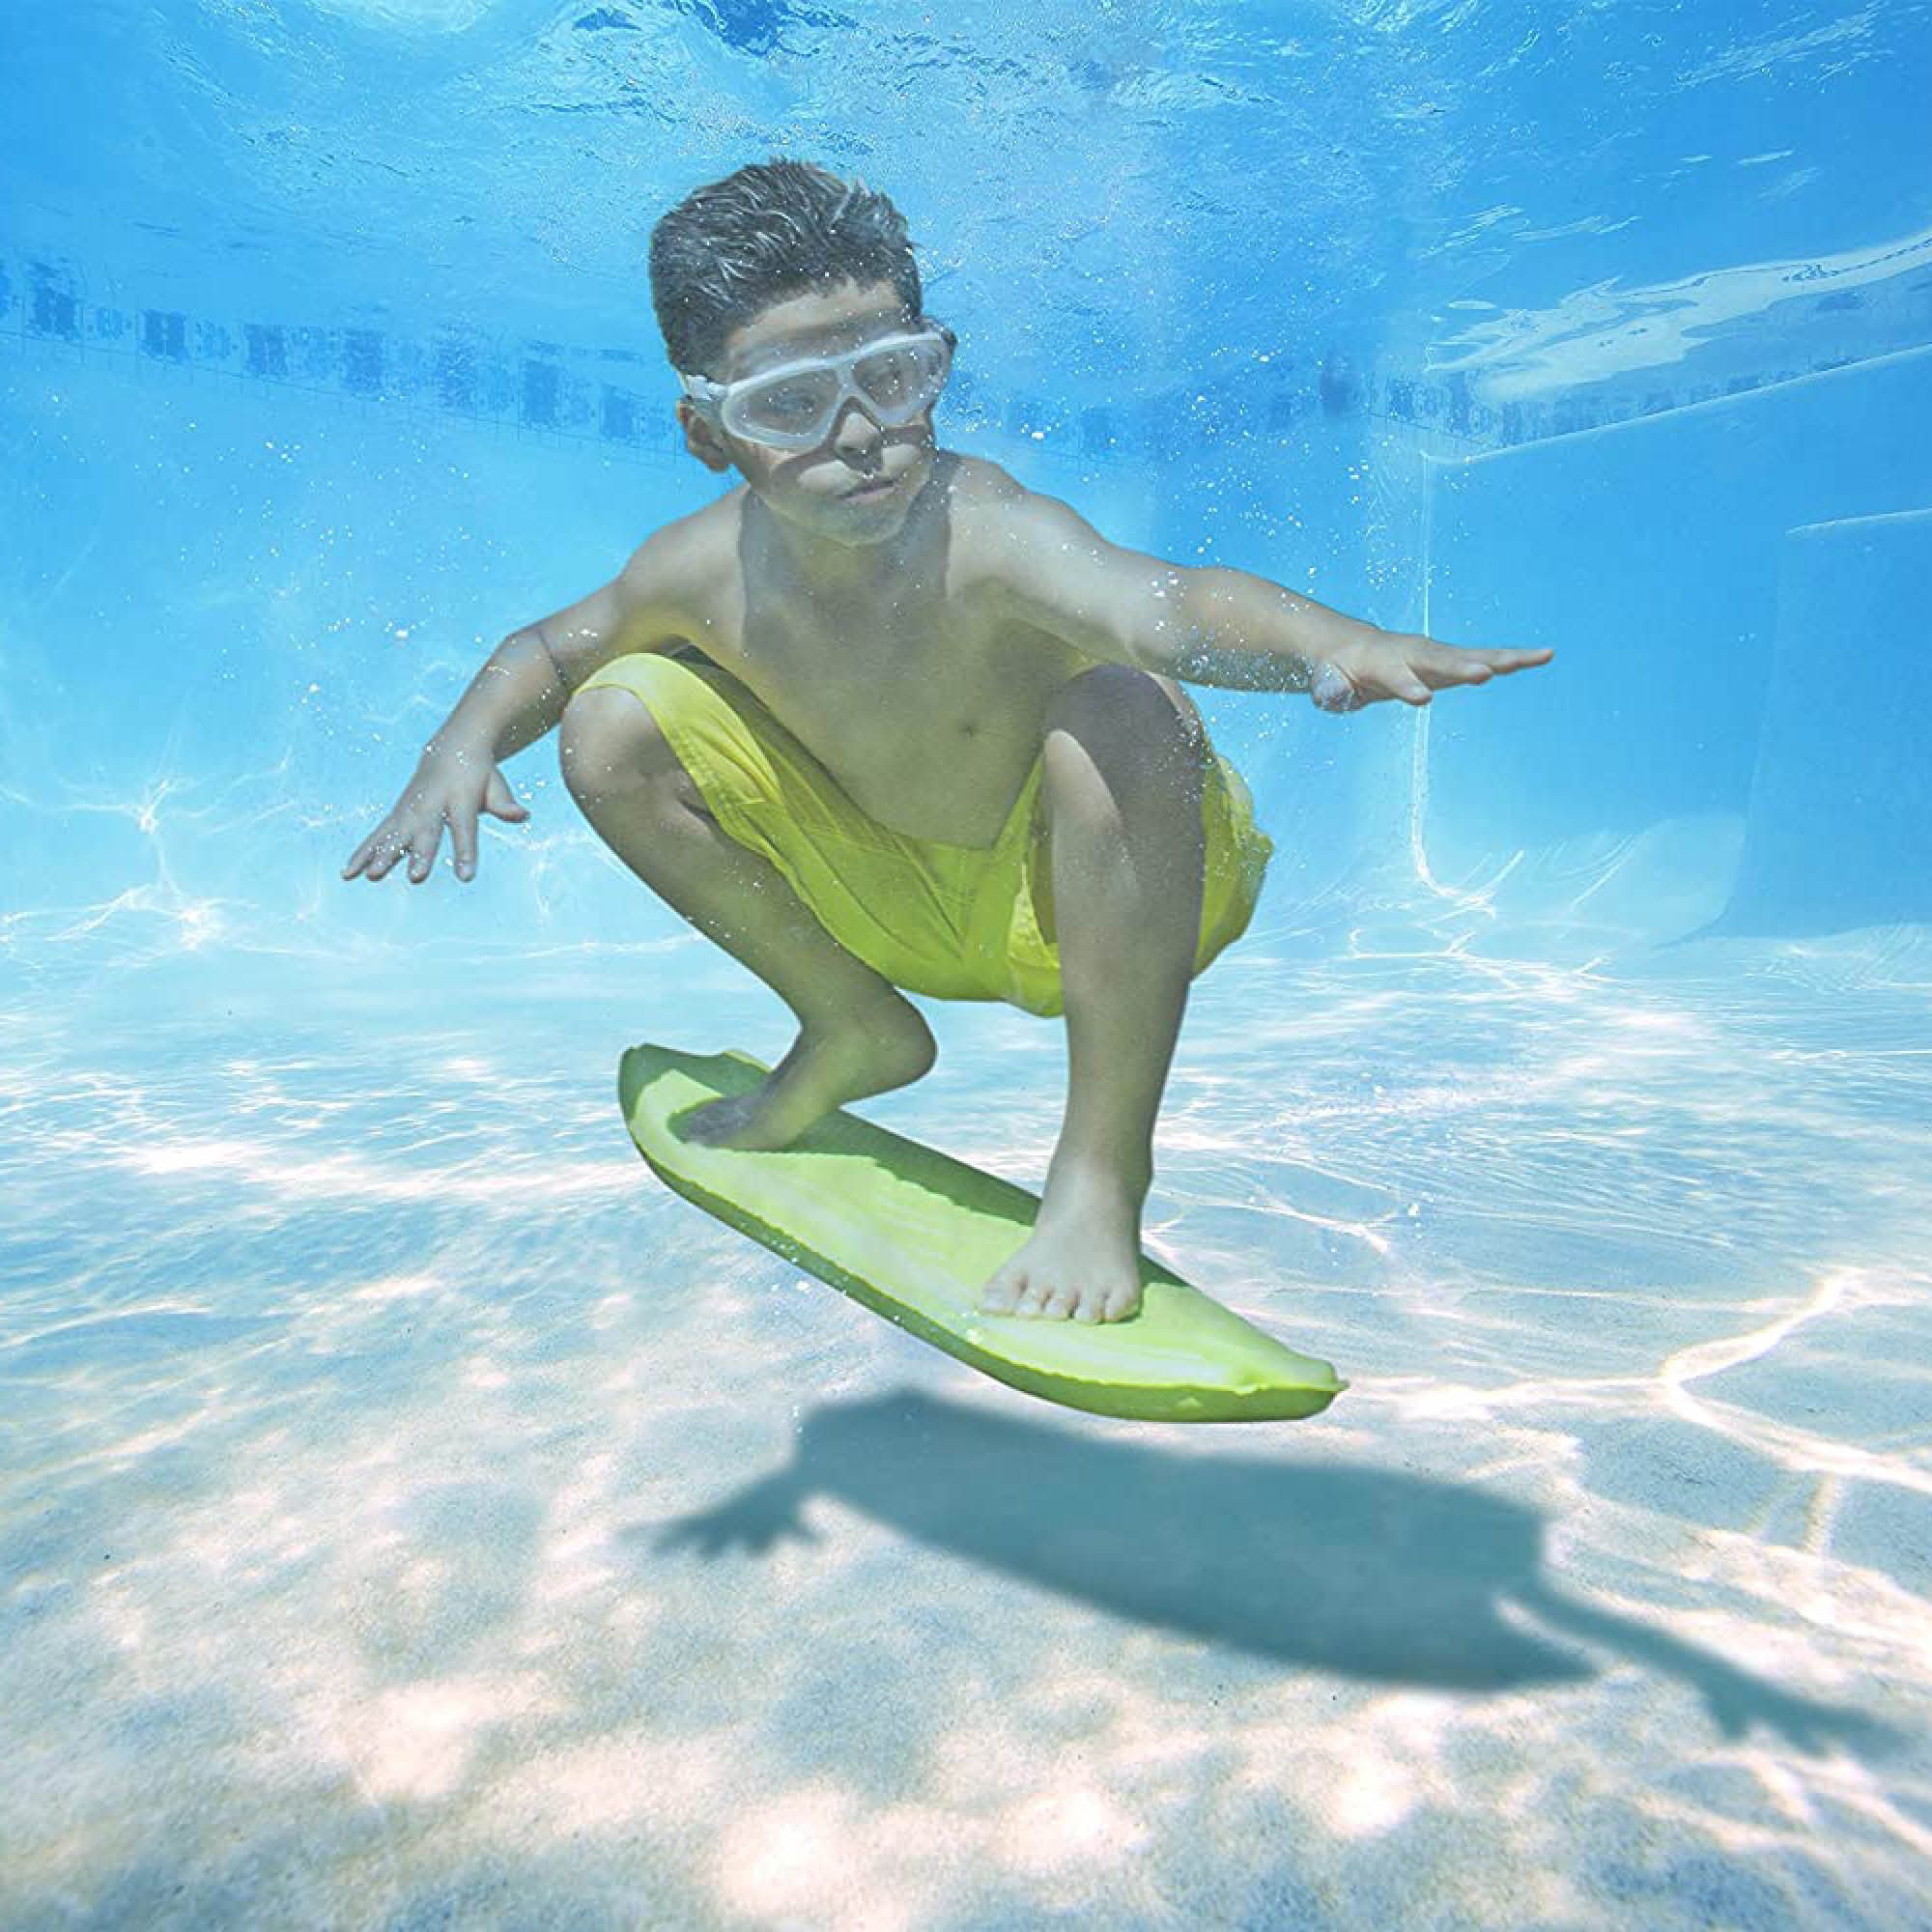 Скейтборд на воде. Сноу серф борд. Underwater Surf. He swims very well